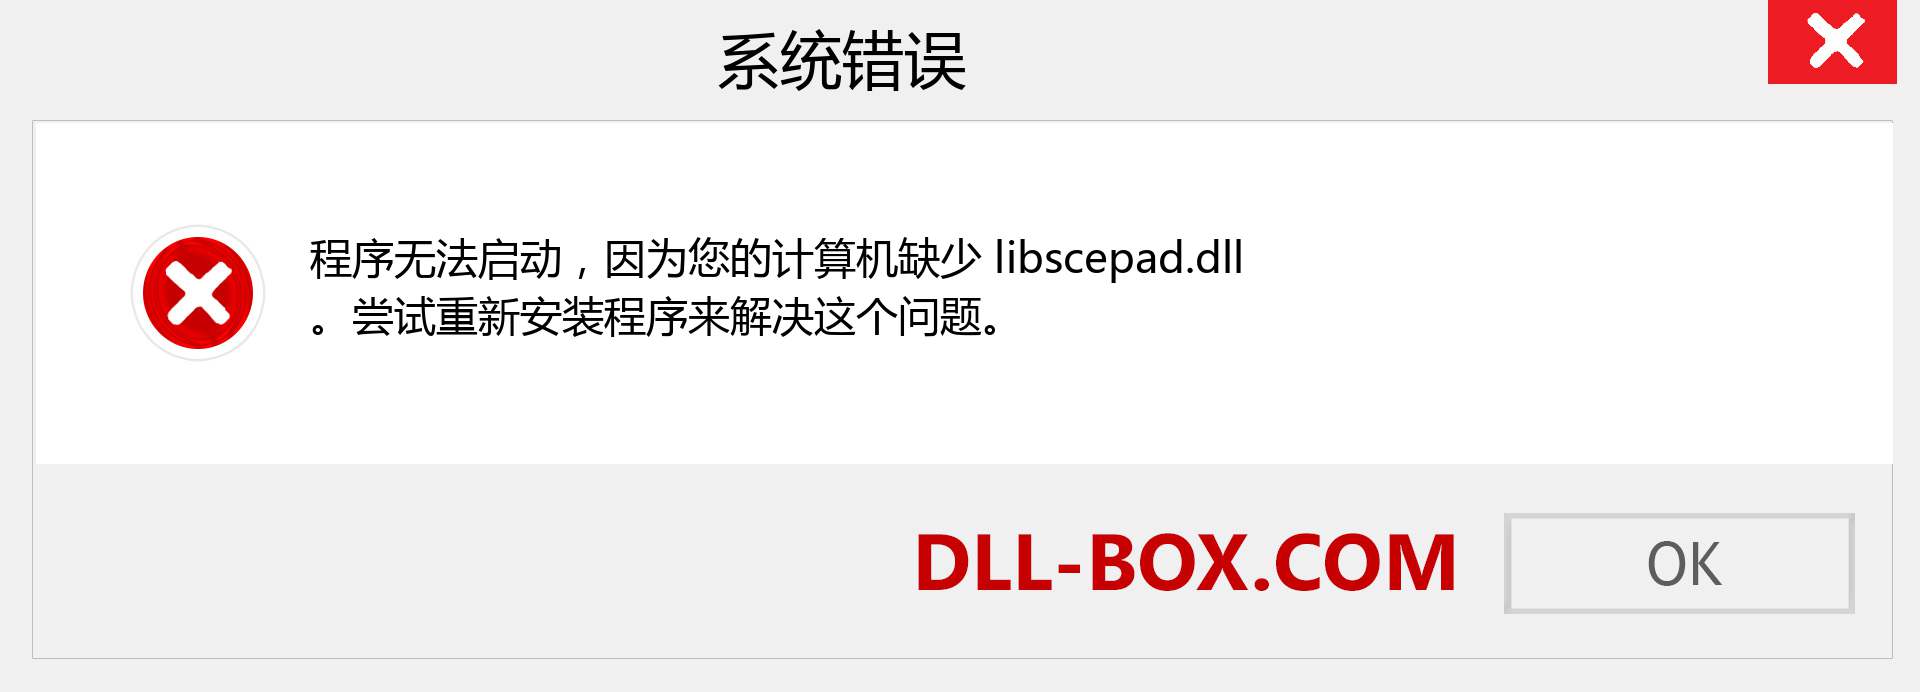 libscepad.dll 文件丢失？。 适用于 Windows 7、8、10 的下载 - 修复 Windows、照片、图像上的 libscepad dll 丢失错误